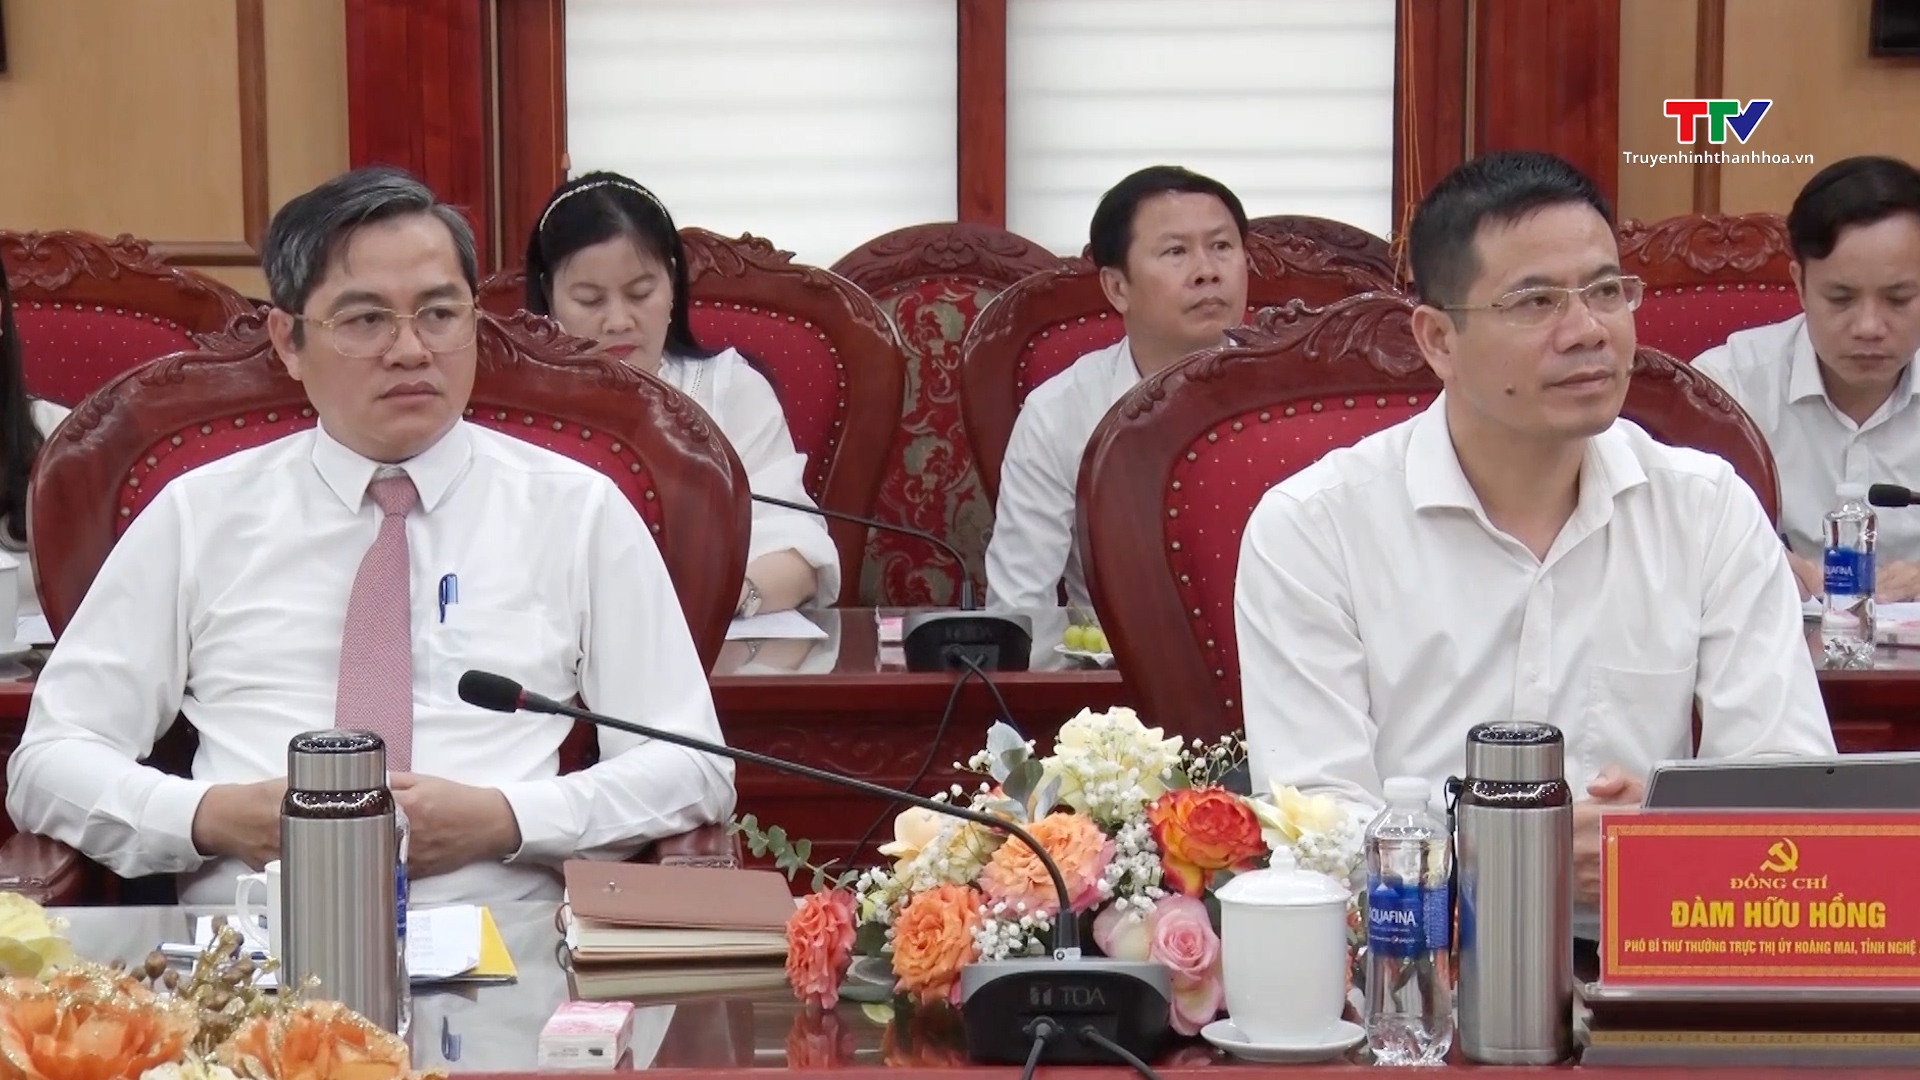 Thị xã Nghi Sơn, tỉnh Thanh Hóa và Thị xã Hoàng Mai, tỉnh Nghệ An ký kết thỏa thuận hợp tác- Ảnh 3.